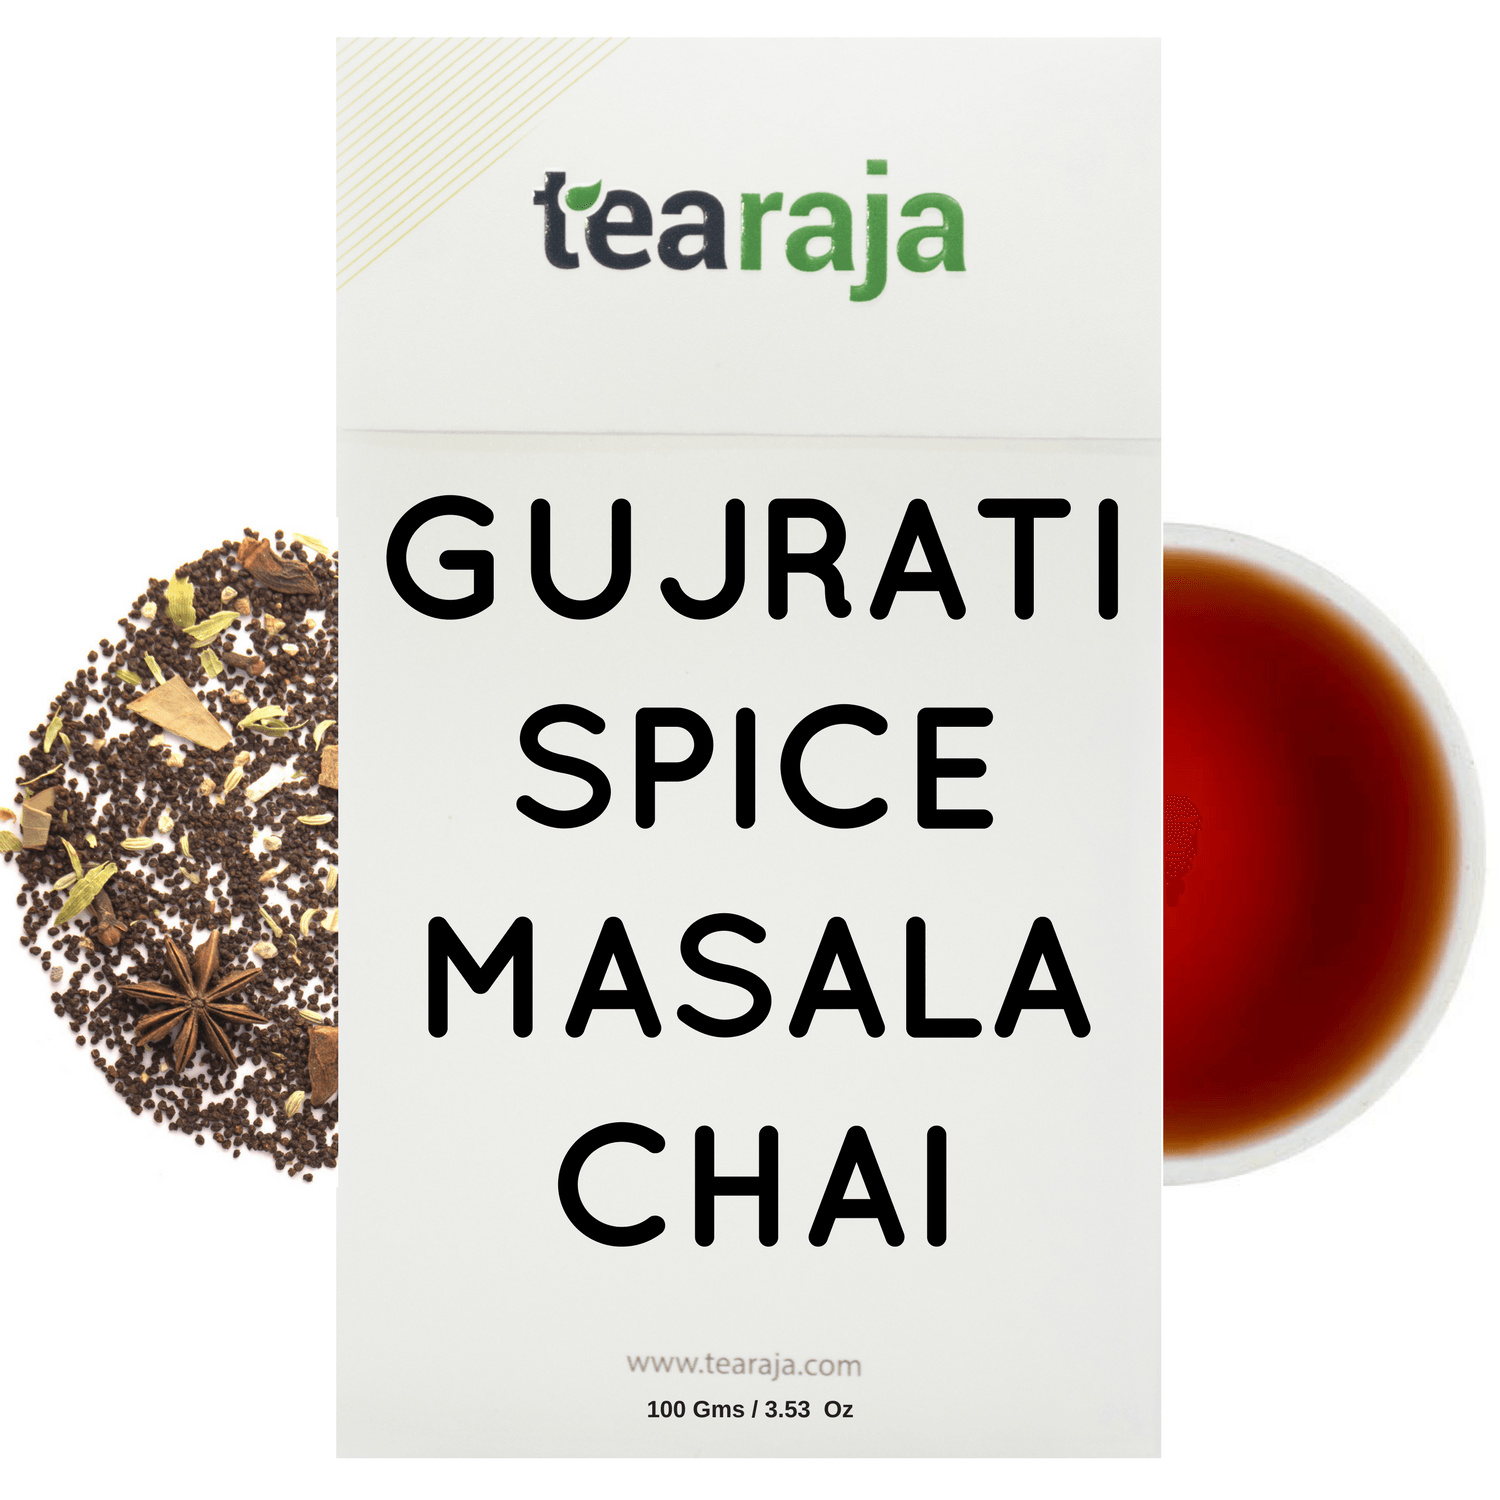 Gujrati Spice Masala Chai - Tearaja